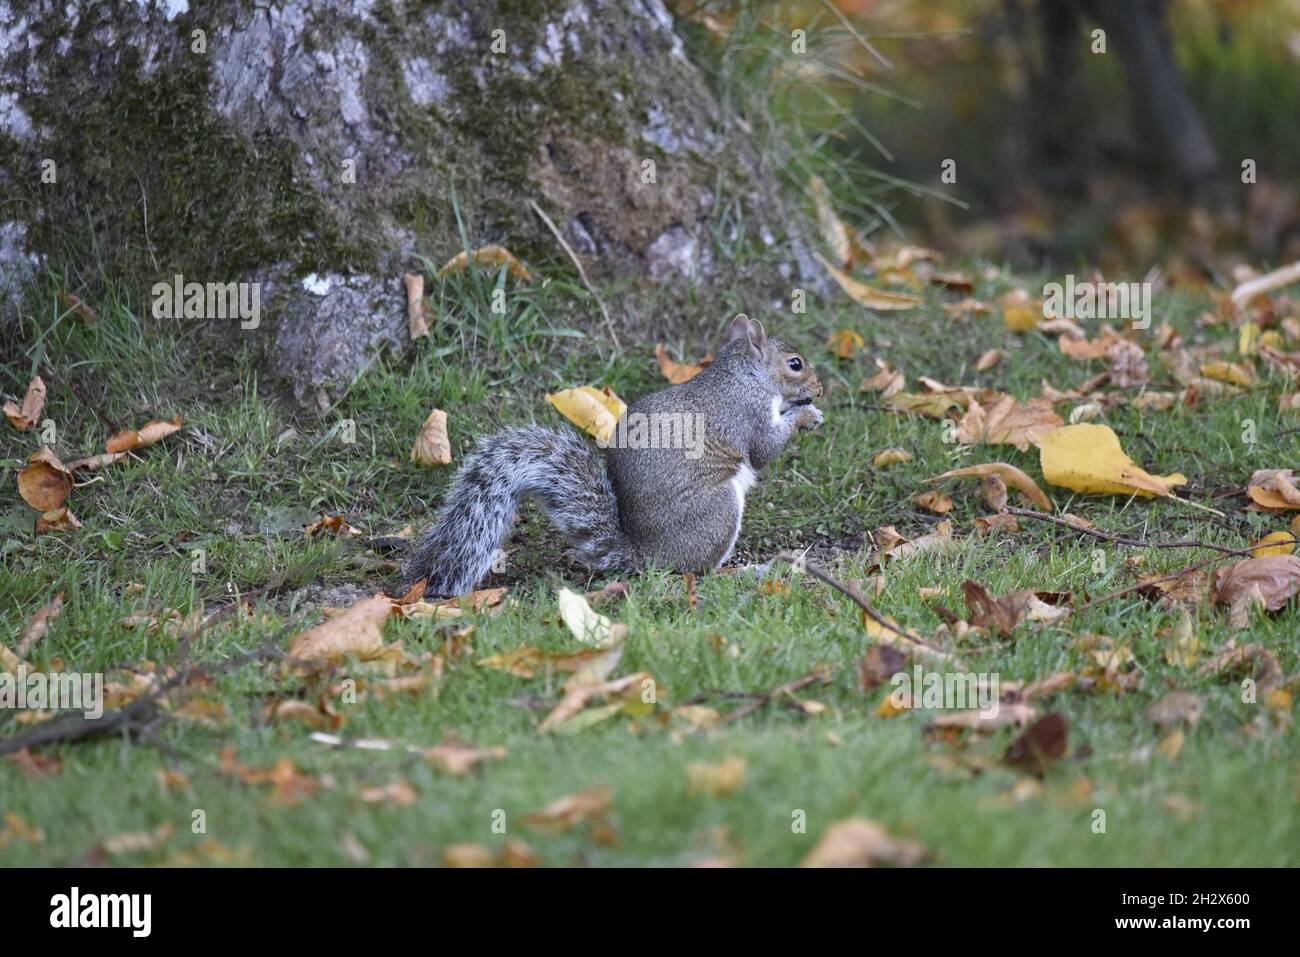 Image de profil droit d'un écureuil gris de l'est (Sciurus carolinensis) manger des cornes à la base d'un arbre en octobre au pays de Galles, au Royaume-Uni Banque D'Images